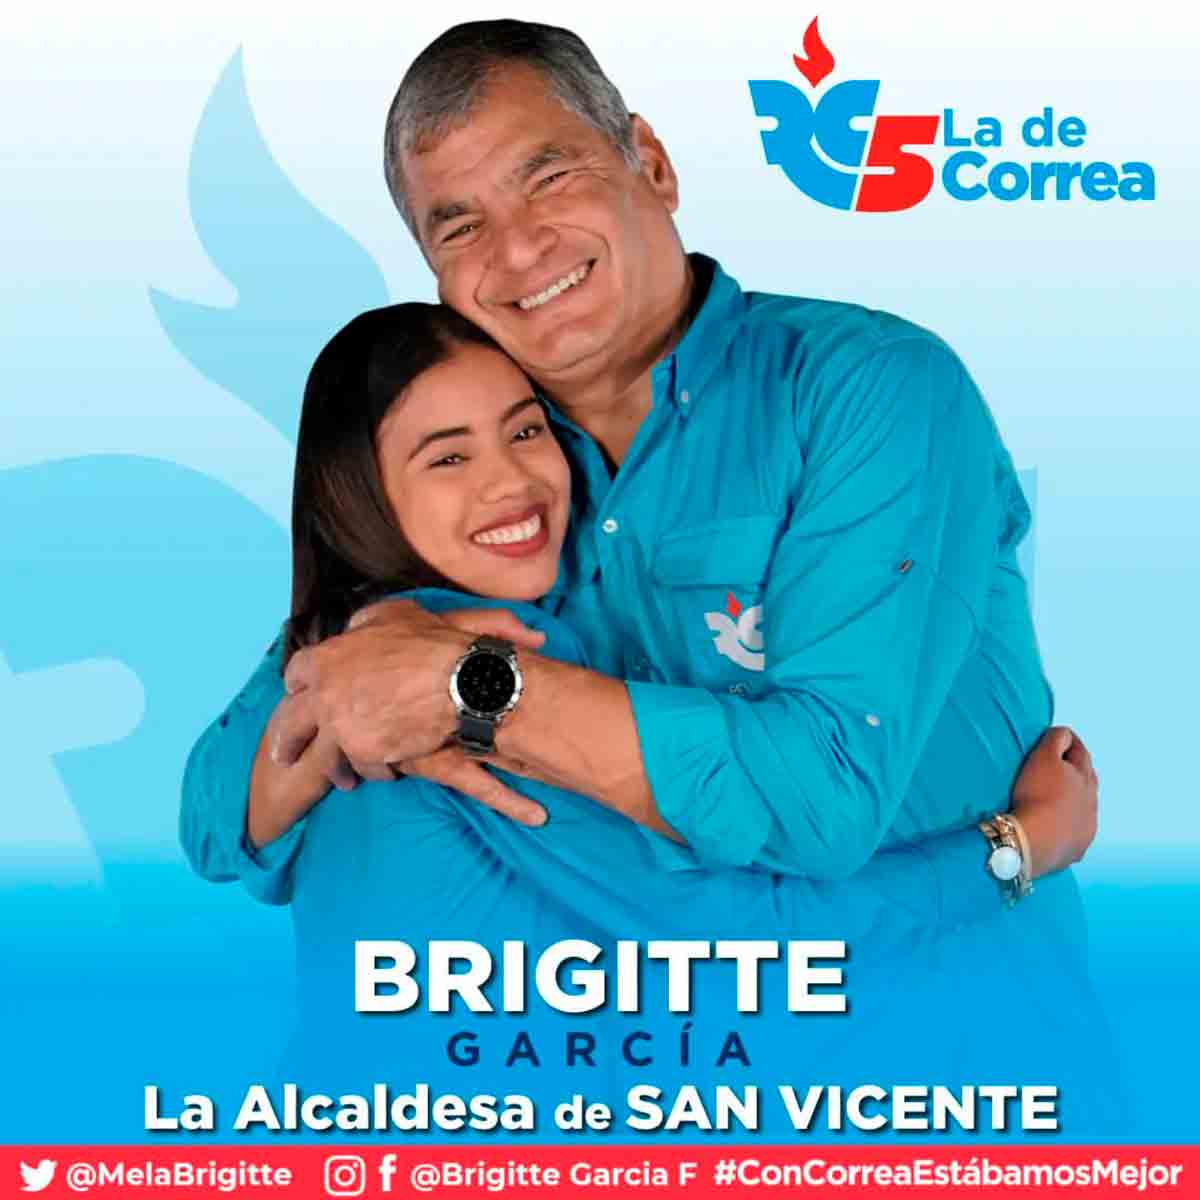 Brigitte García a volt elnök, Rafael Correa Forradalmi Polgári Pártjának tagja volt